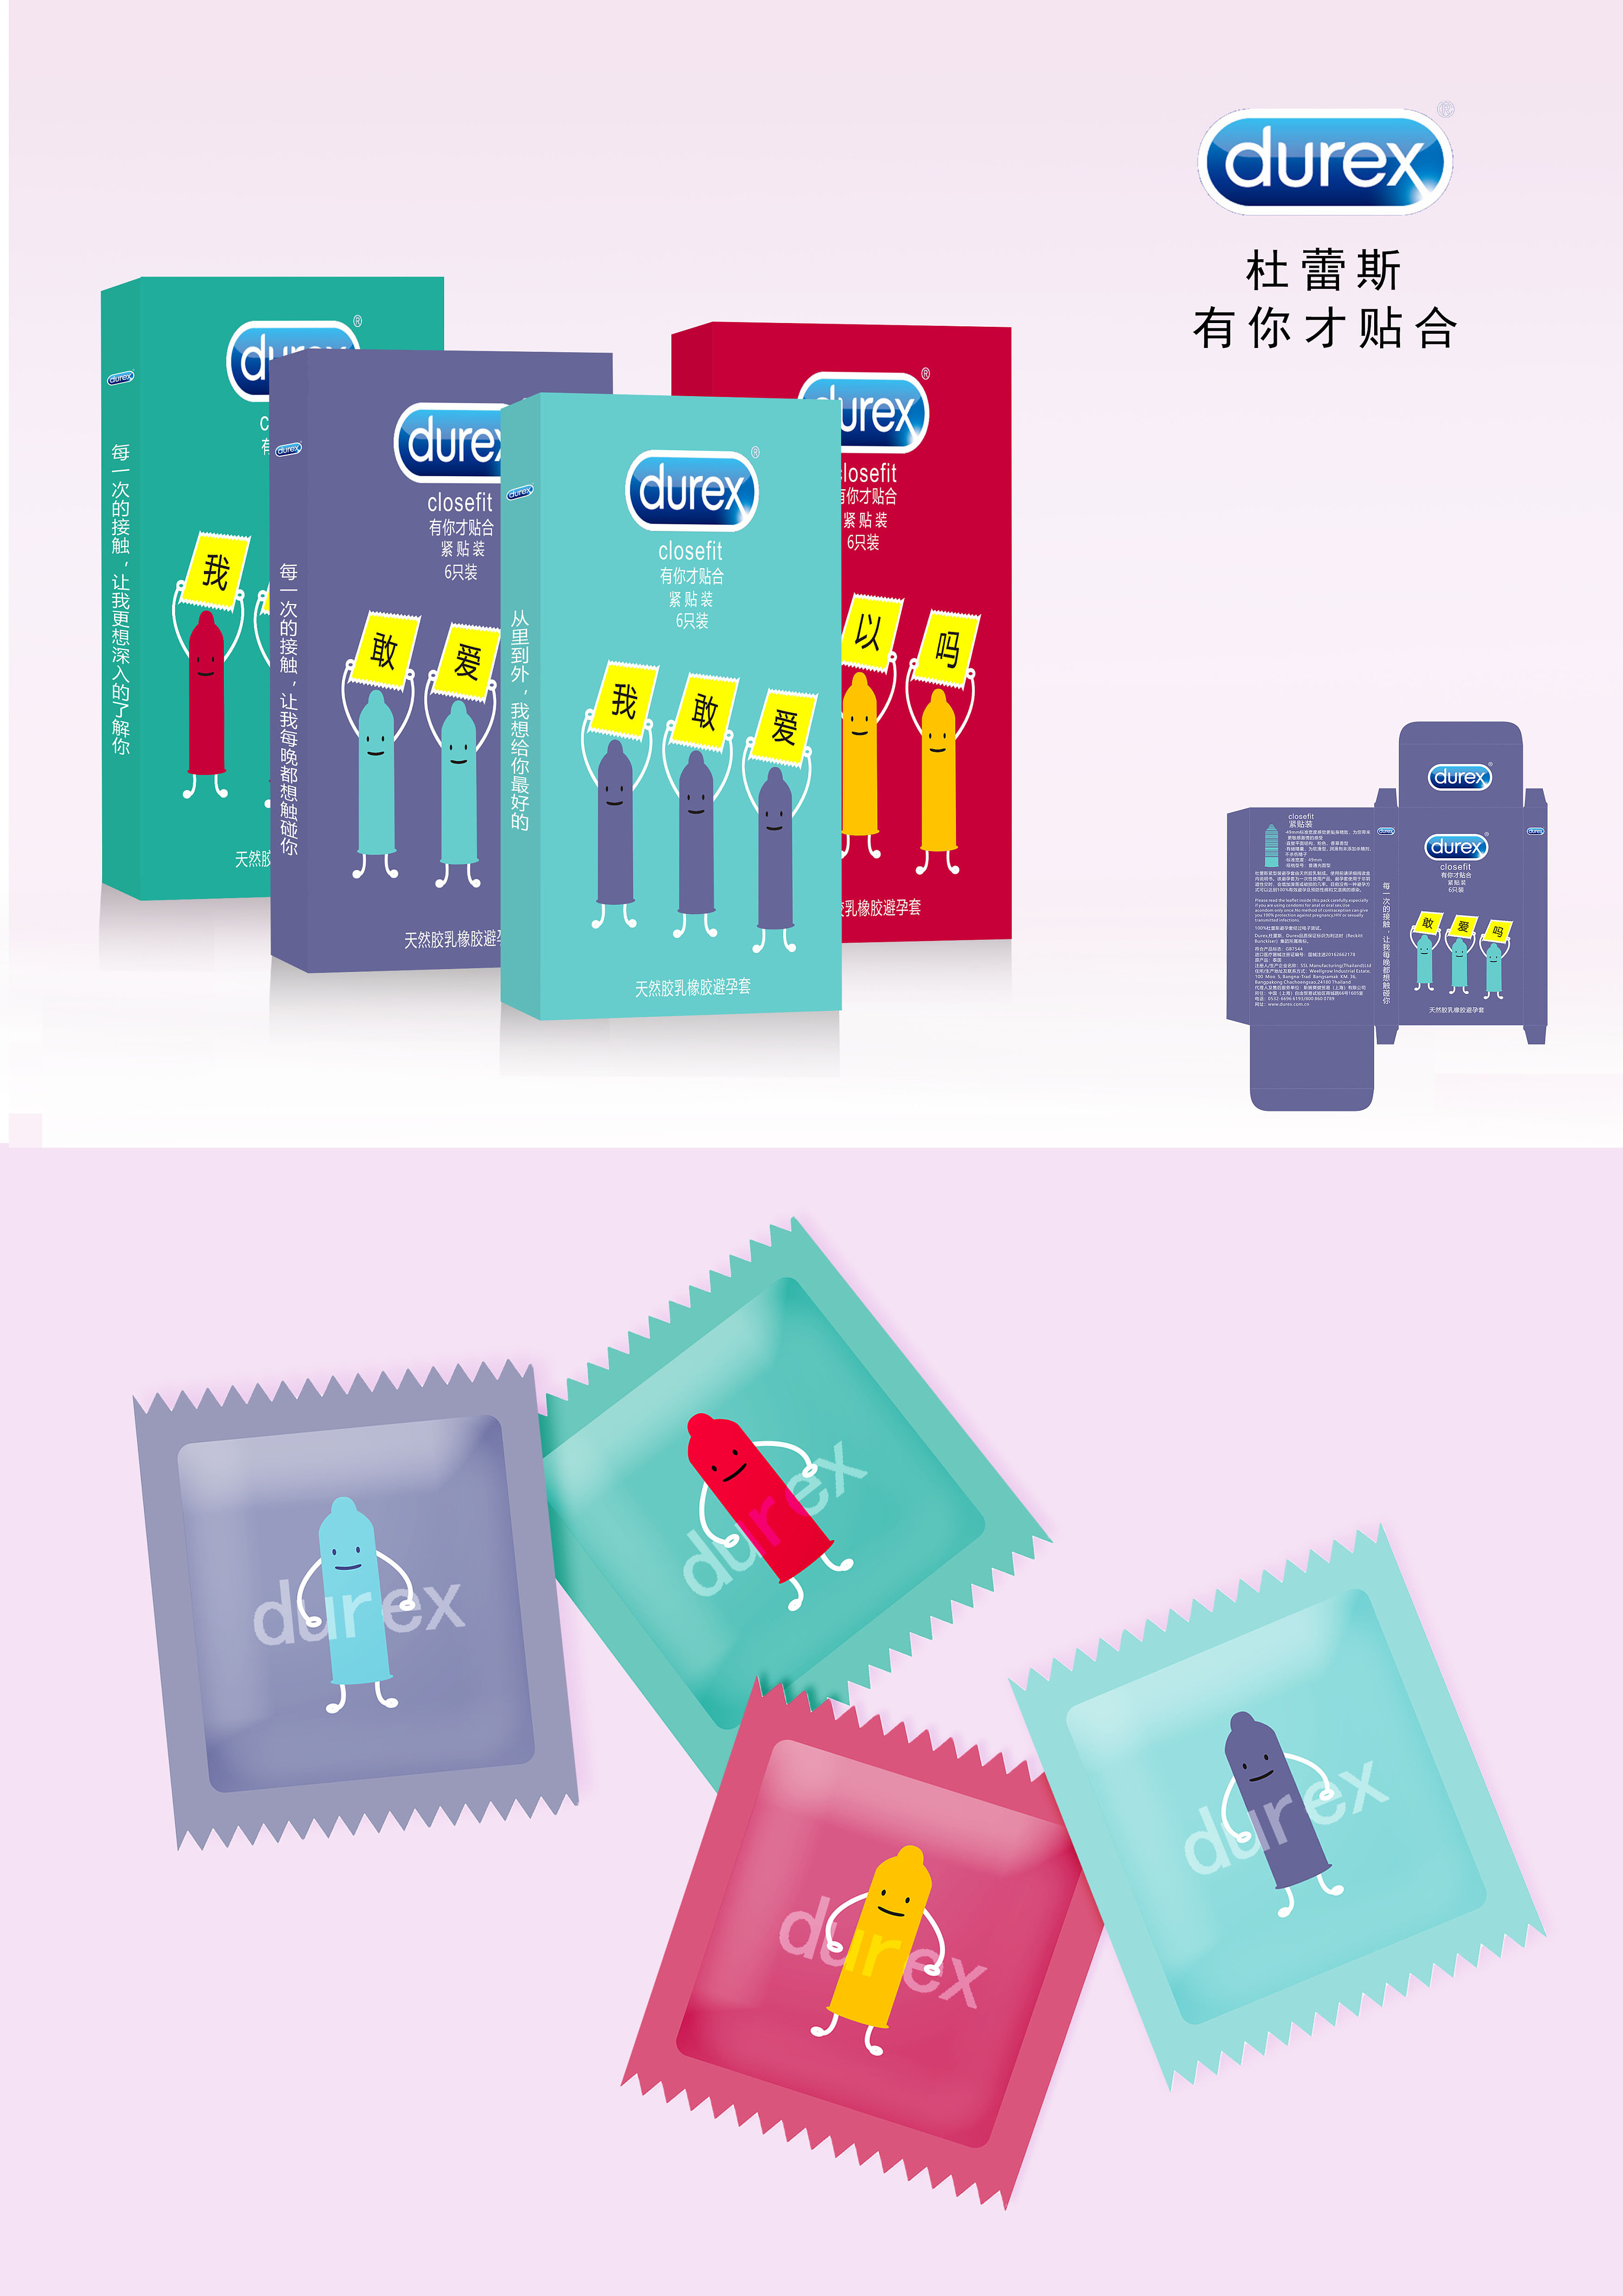 杜蕾斯天然胶乳橡胶避孕套挚爱装12只/盒_使用说明书_价格_护生堂大药房